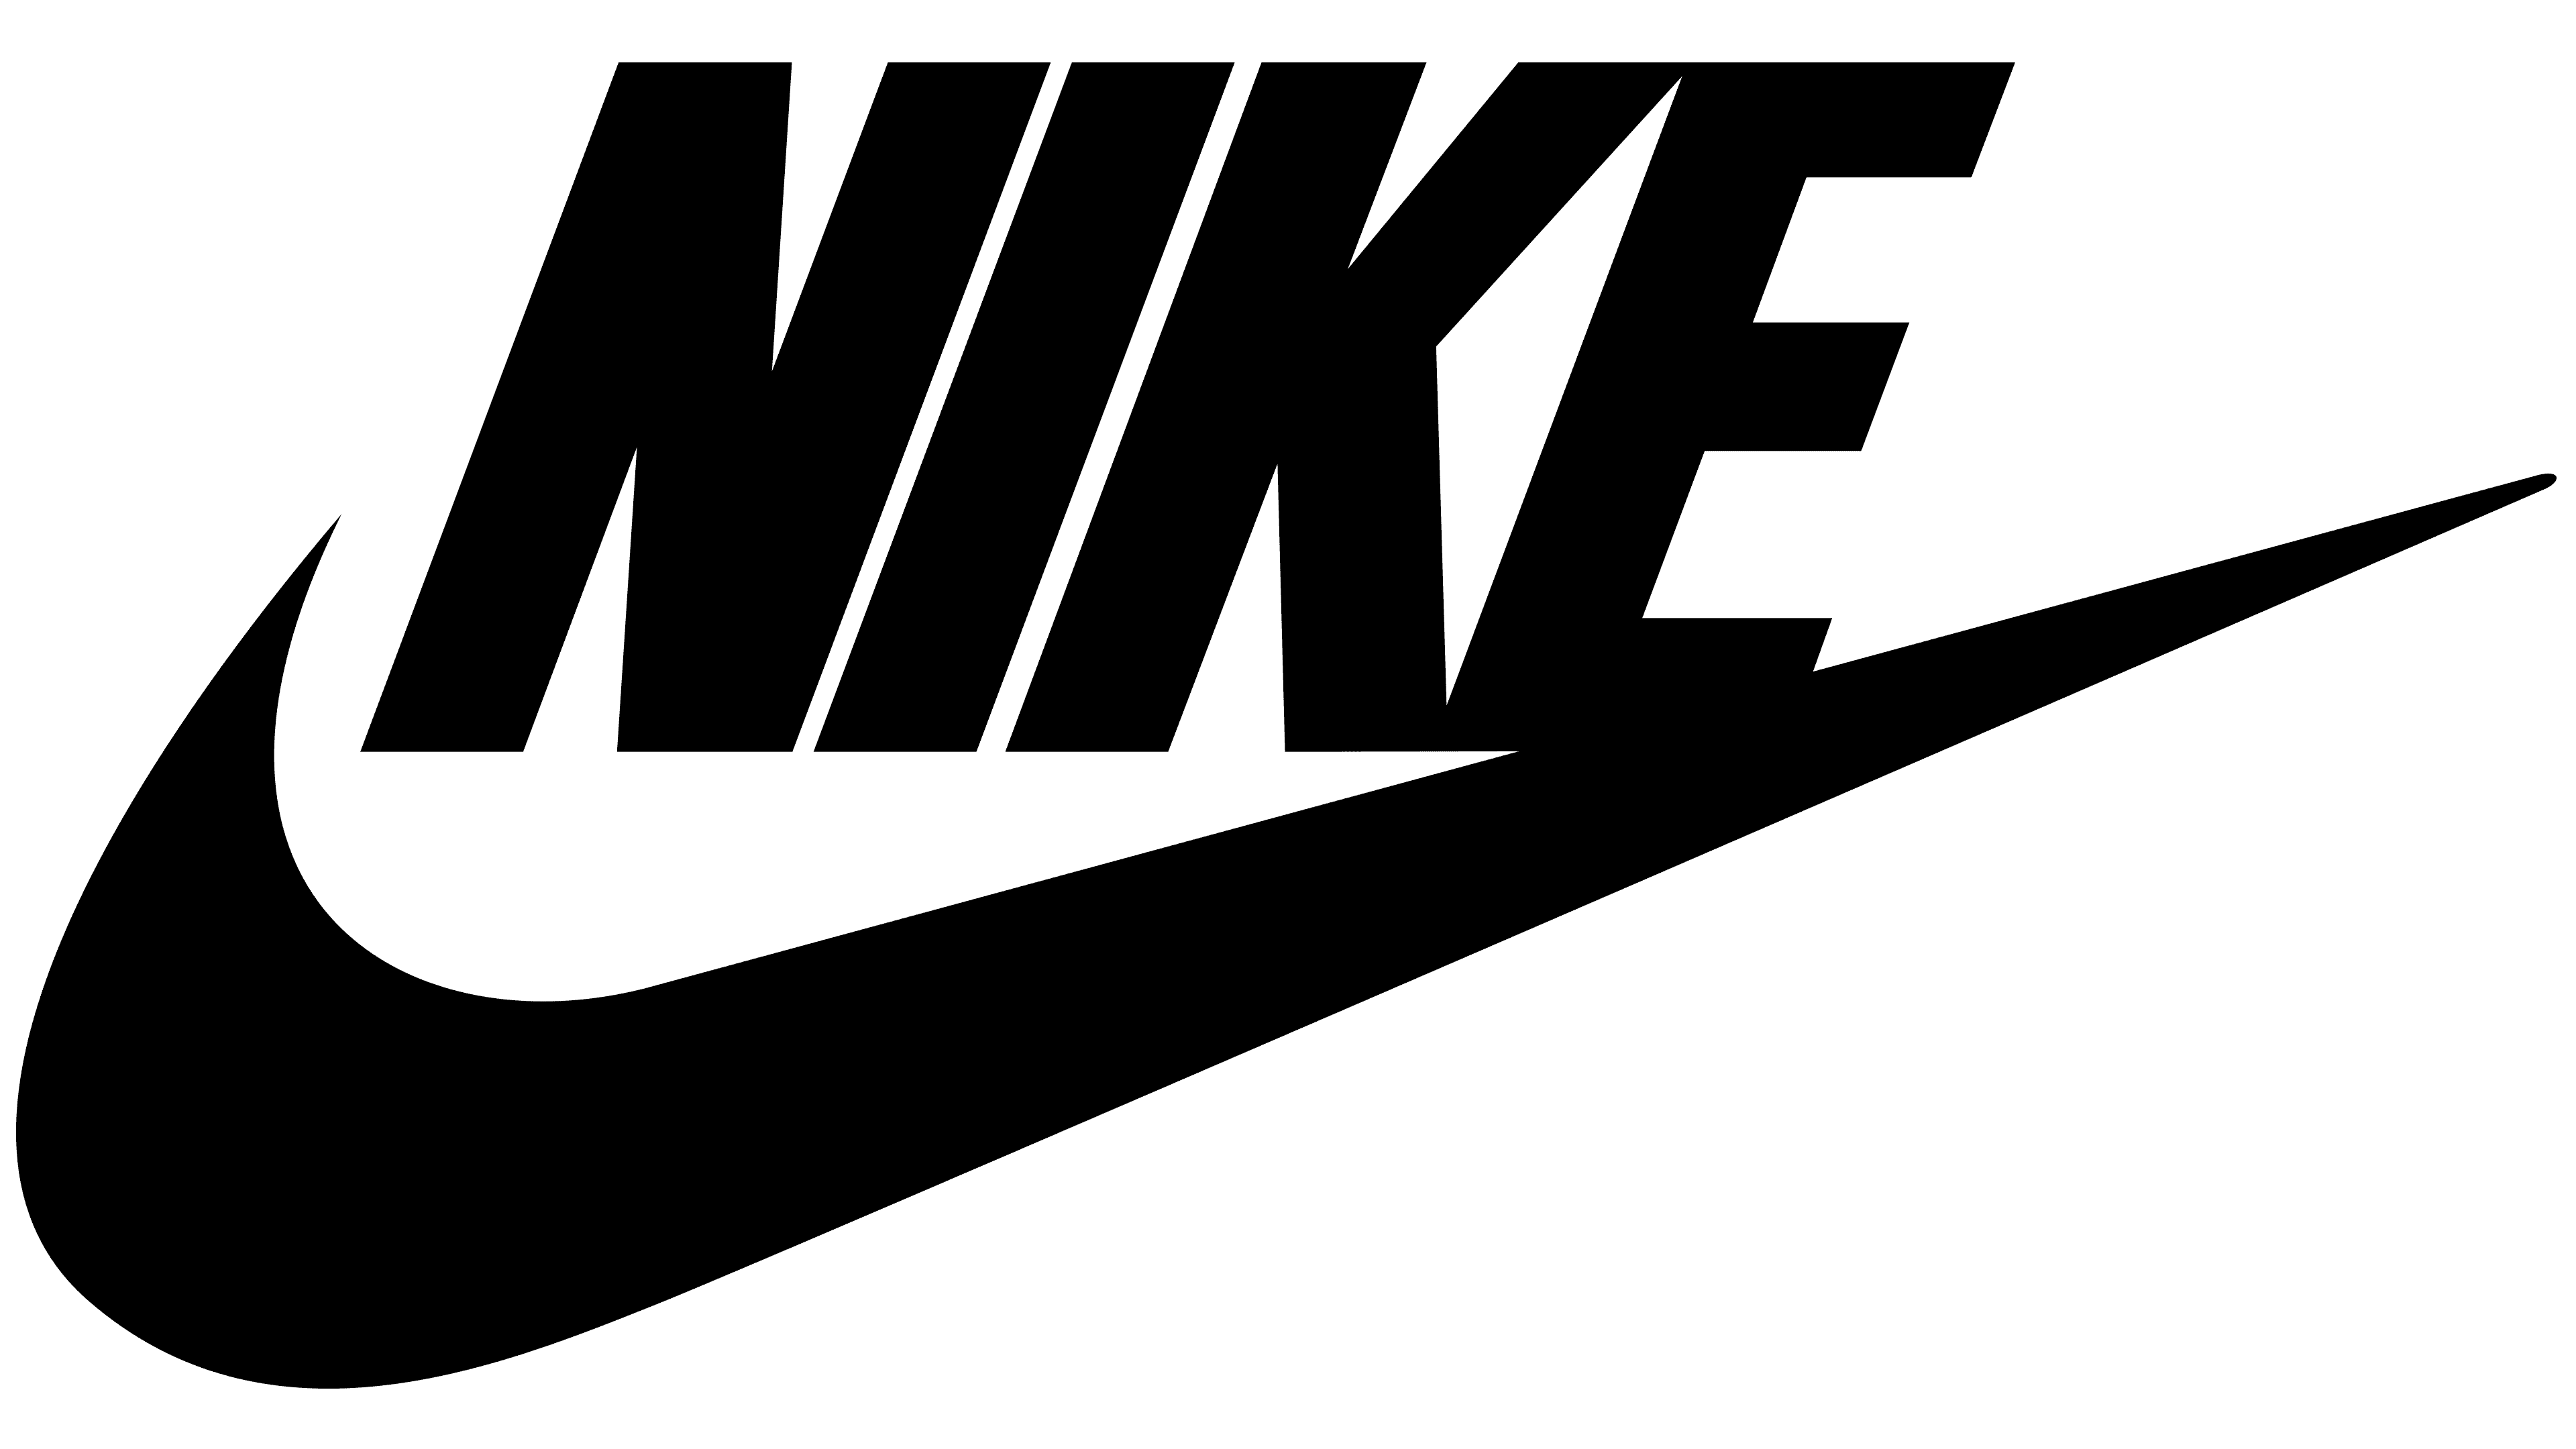 Illustration of the Nike logo